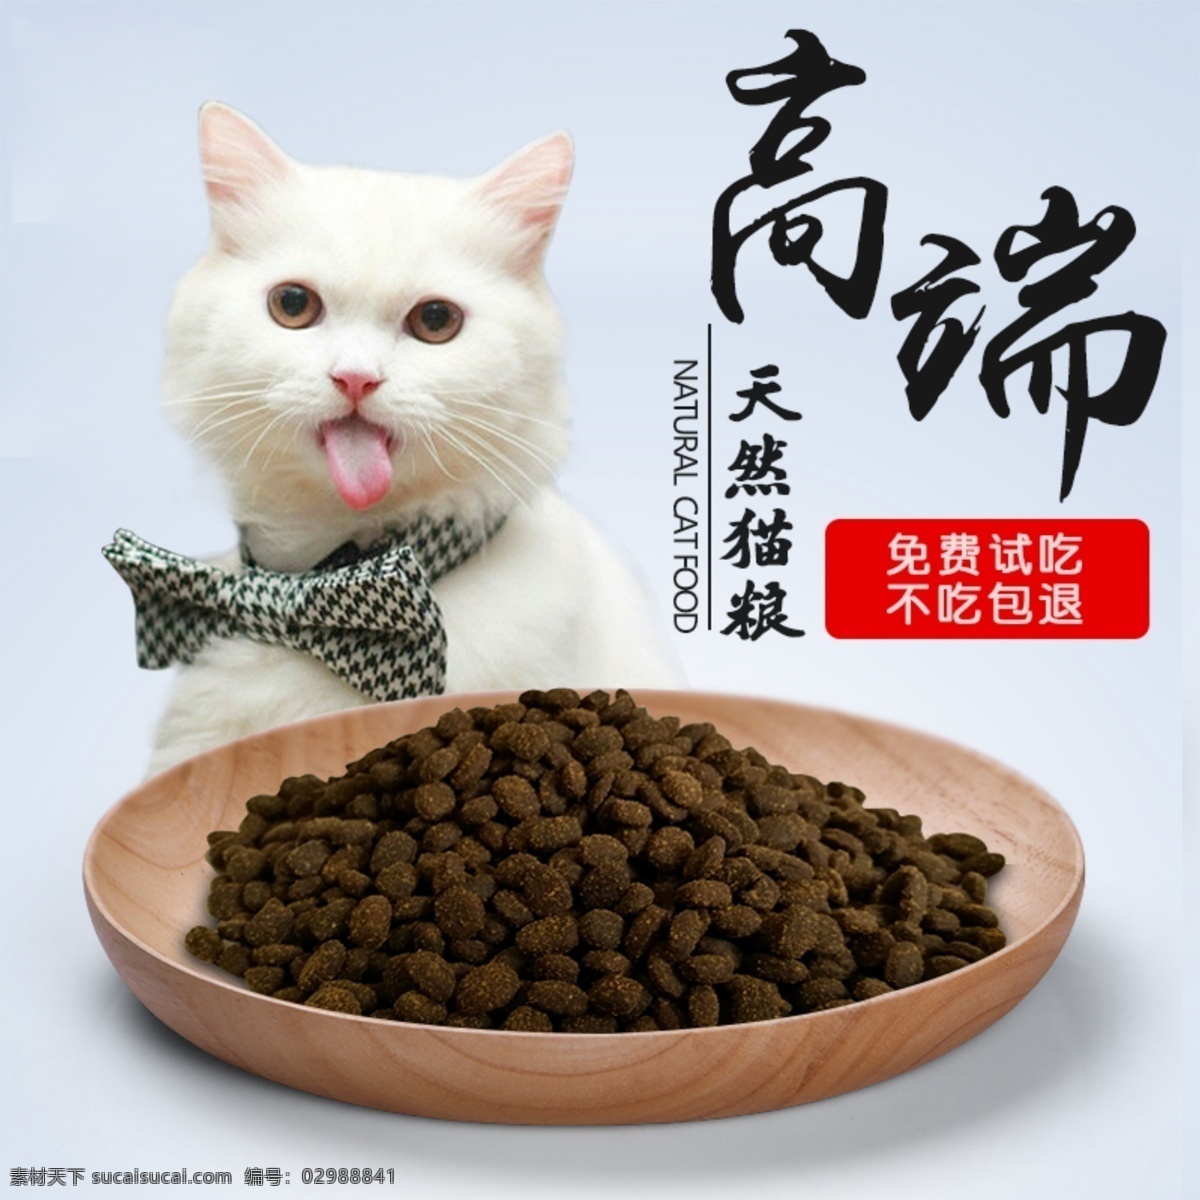 高端 淘宝 宠物食品 主 图 原创 猫咪 宠物主粮 食品 简洁 高端设计